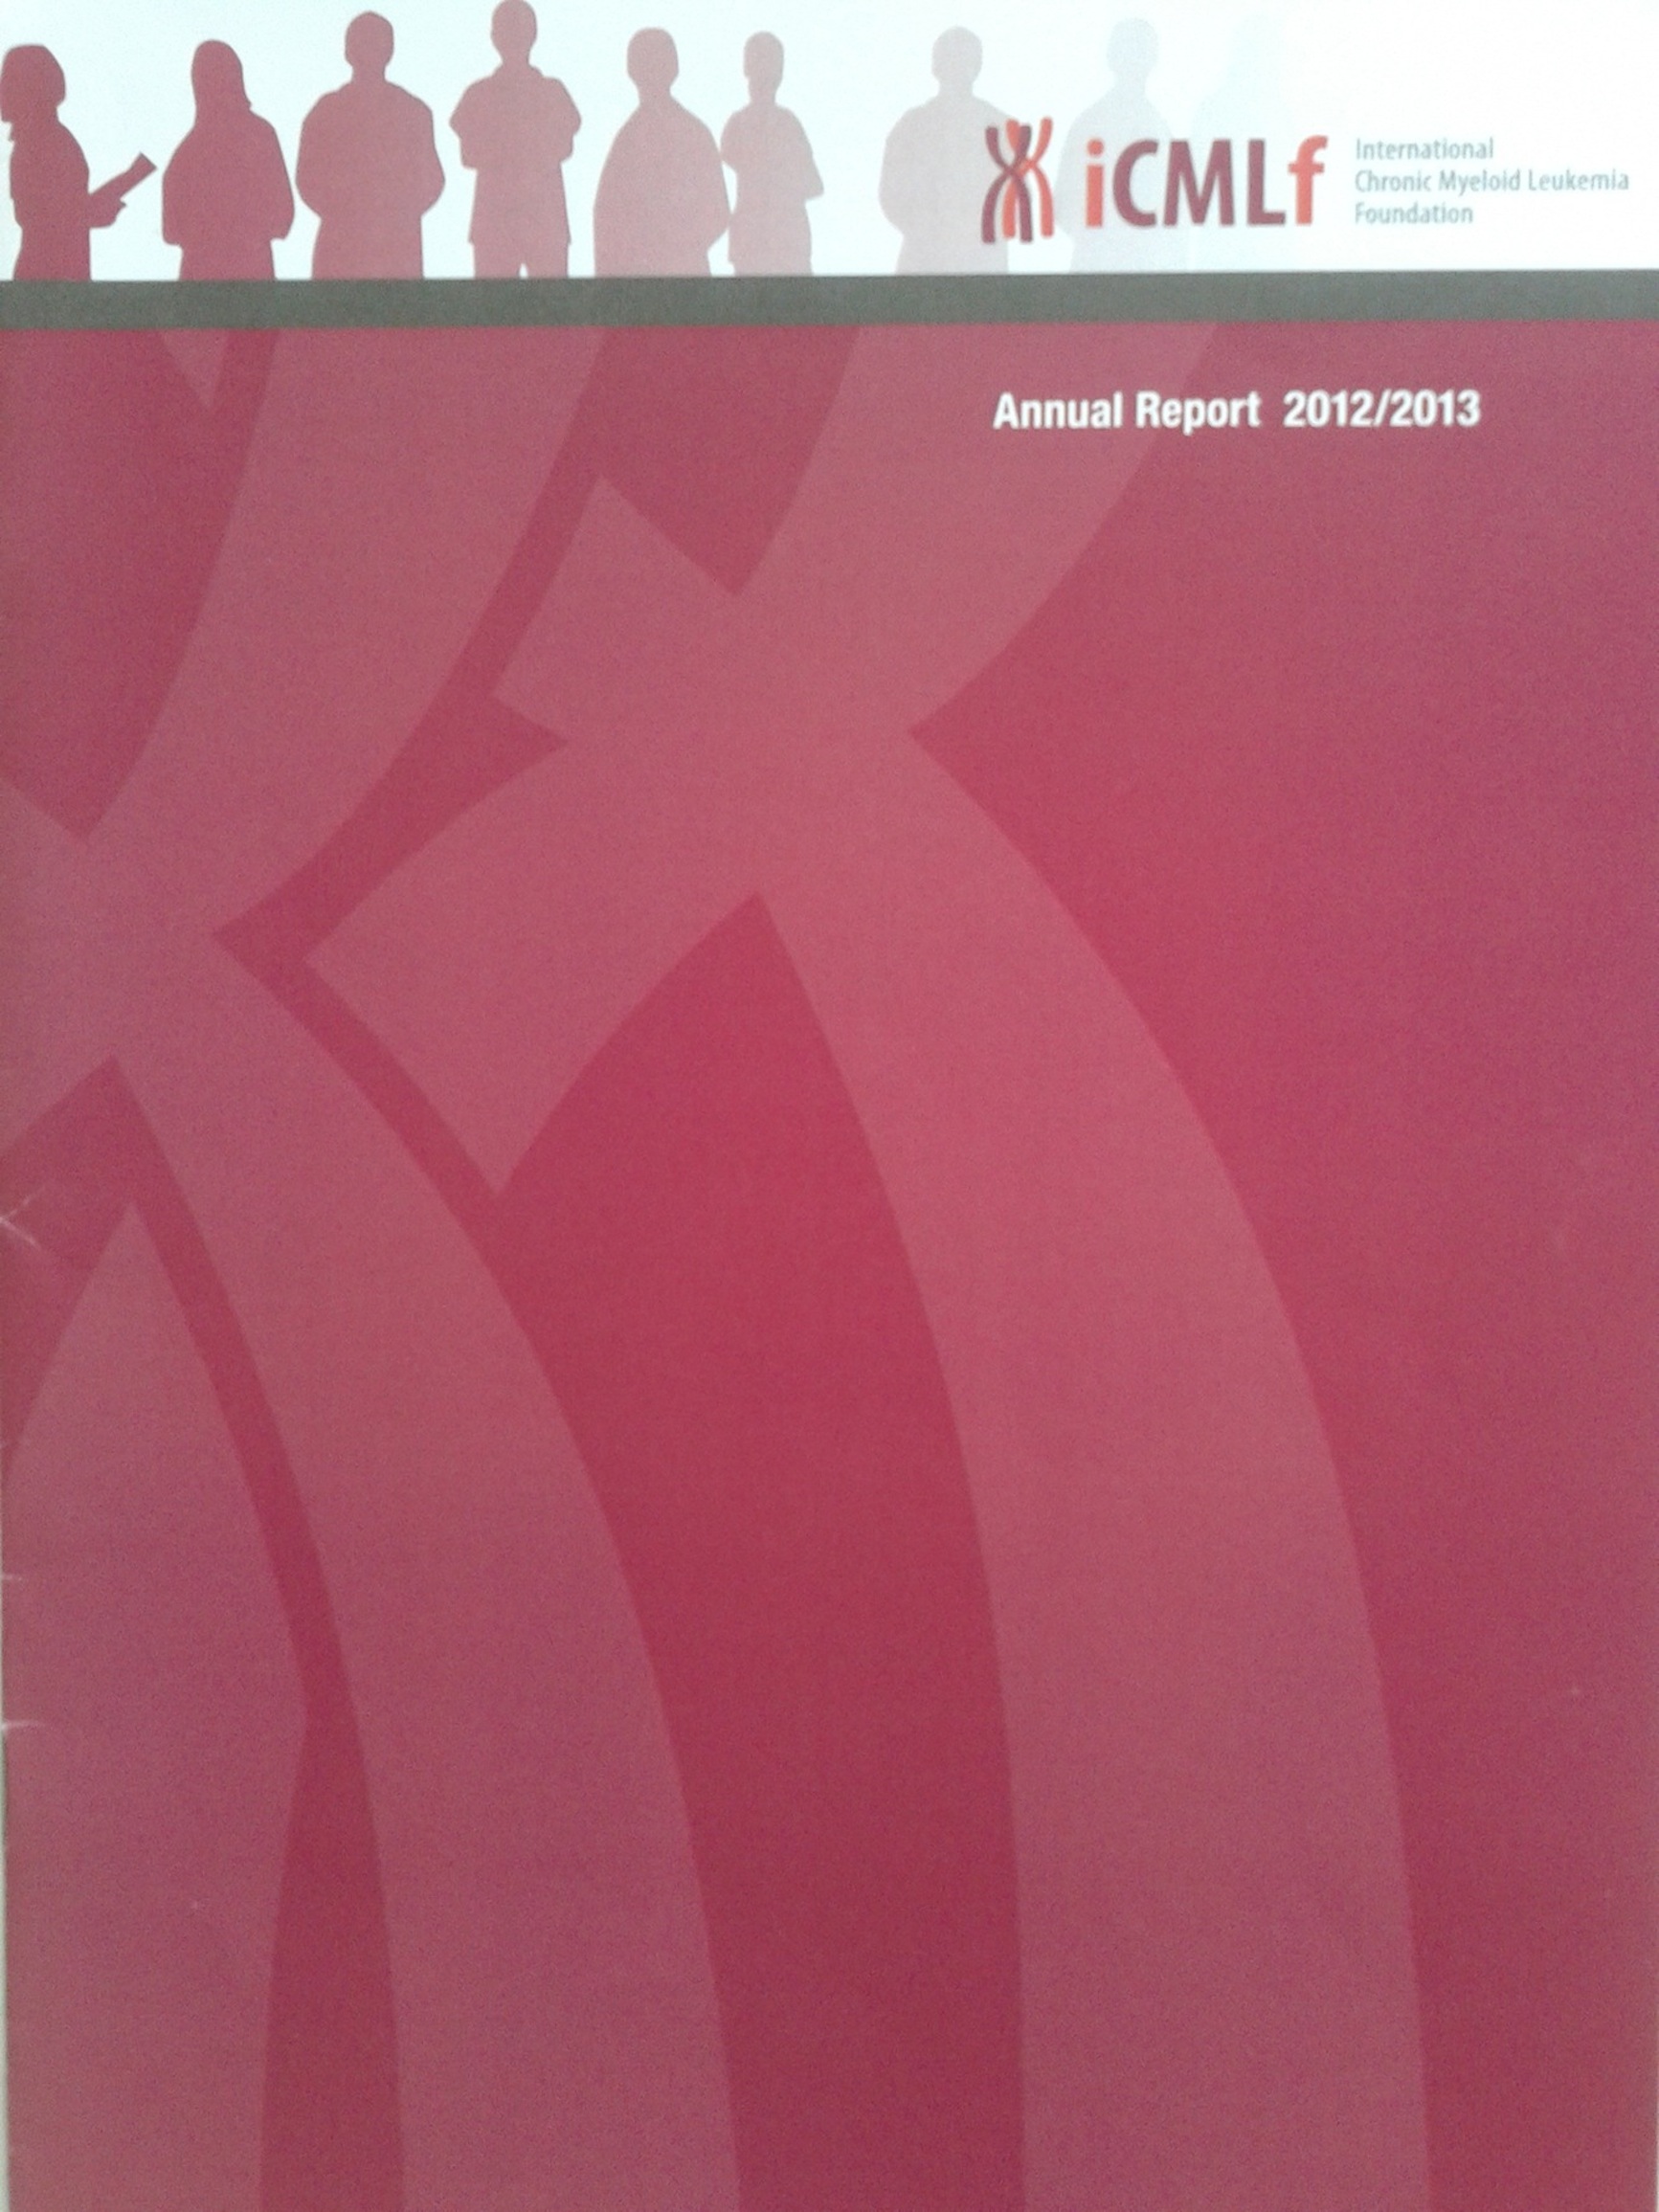 Picture Annual Report 2013